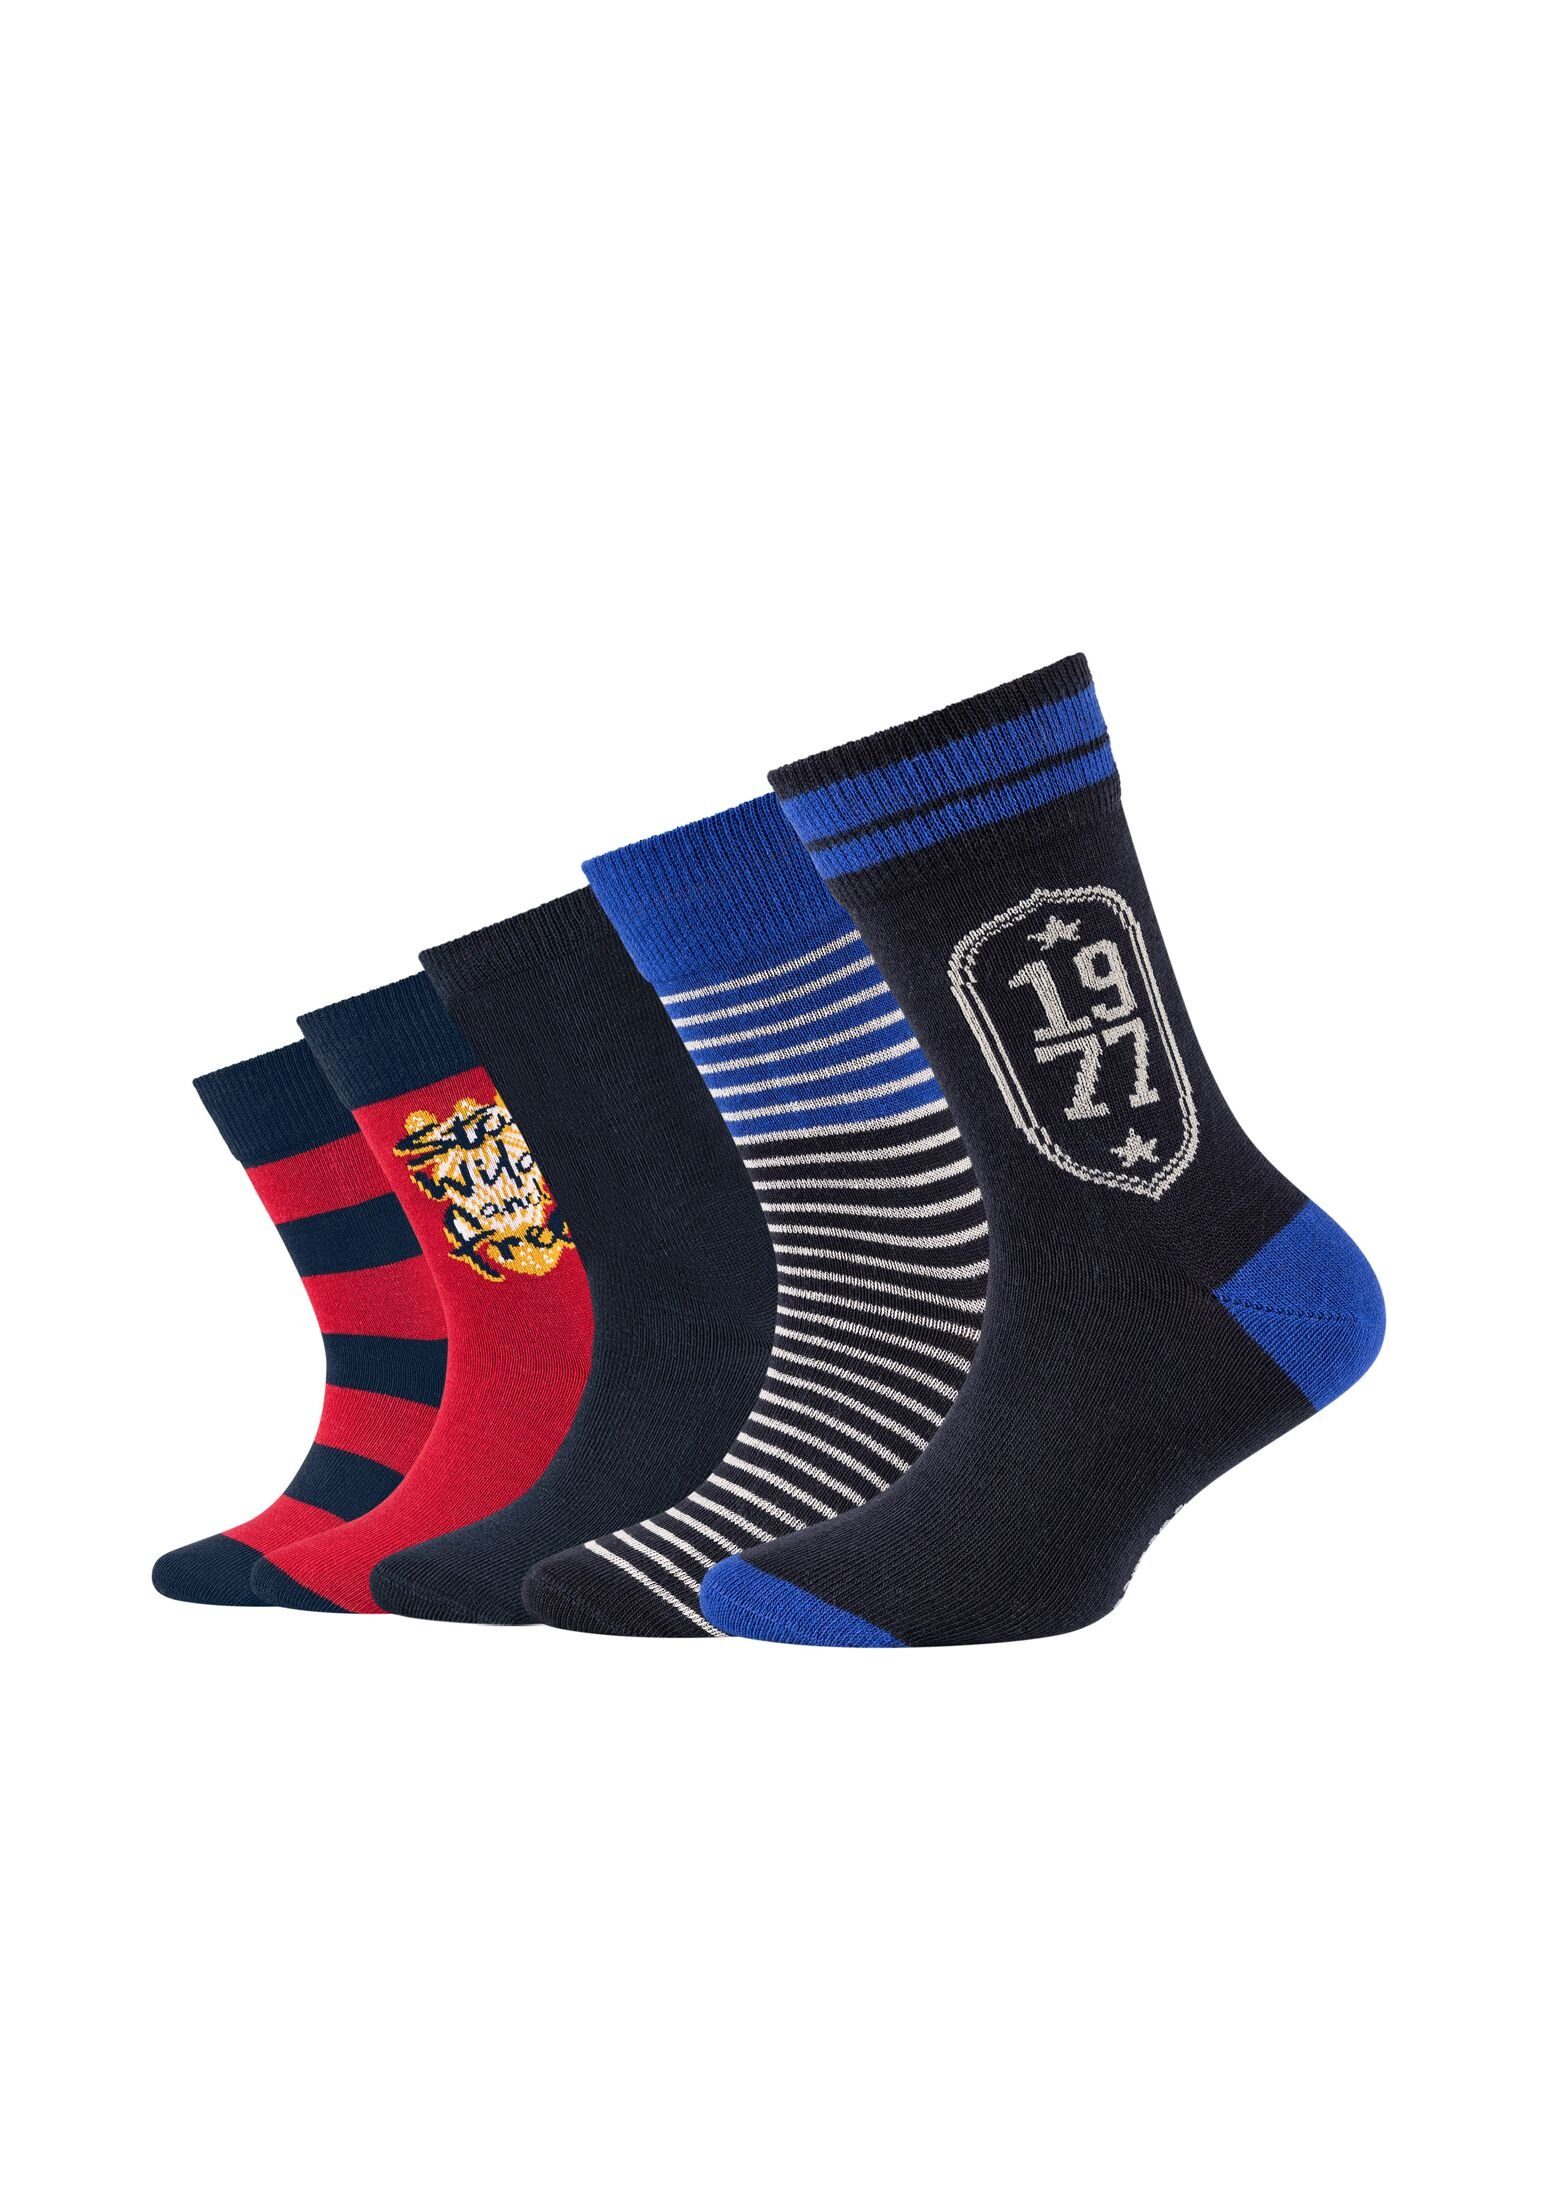 Camano Socken Socken 5er Pack navy | Lange Socken